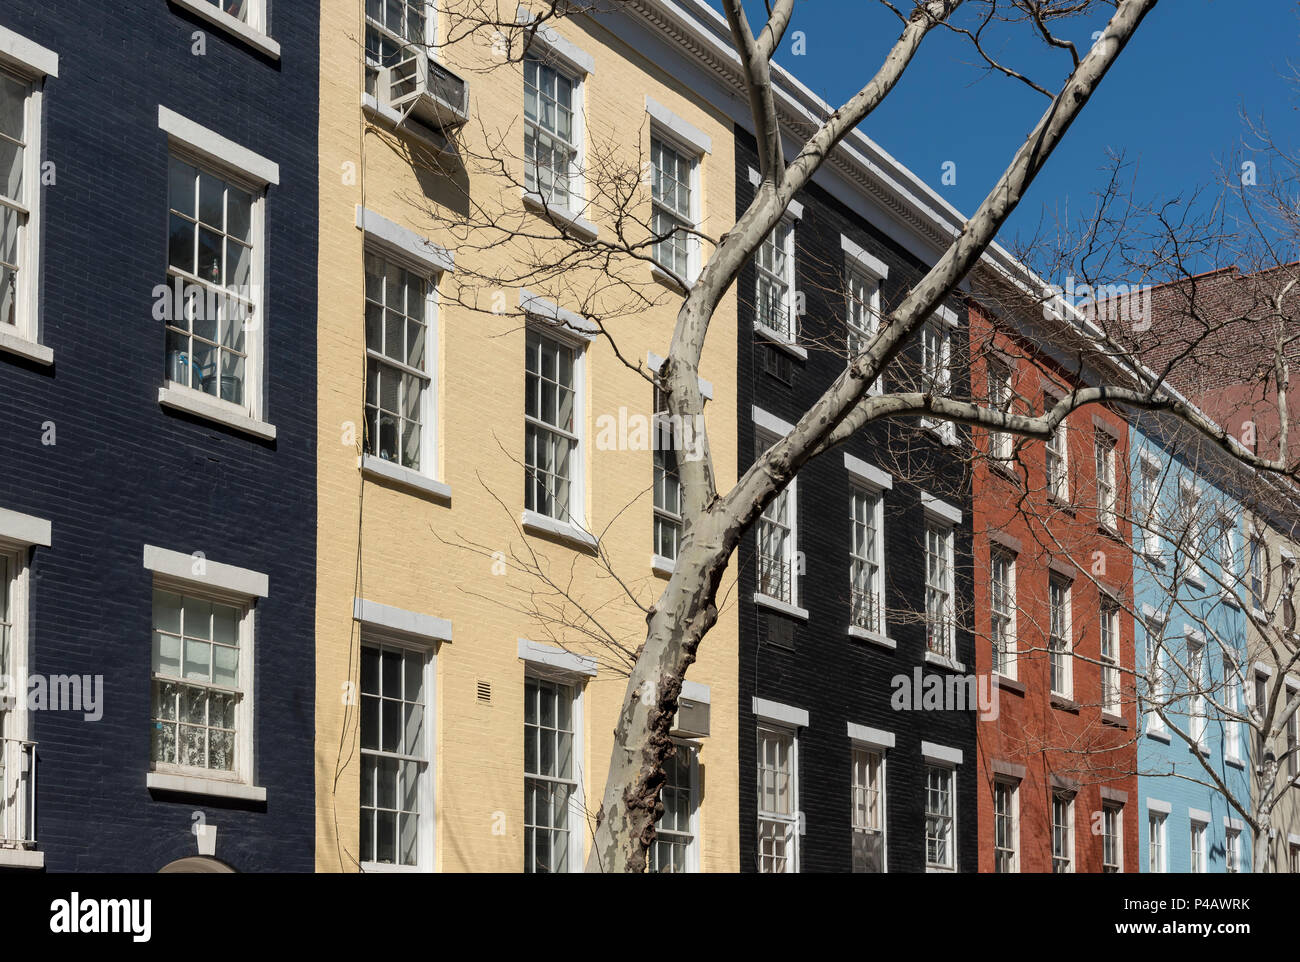 Façades colorées de maisons en rangées sur Sullivan Street dans Greenwich Village, Manhattan, New York City, USA Banque D'Images